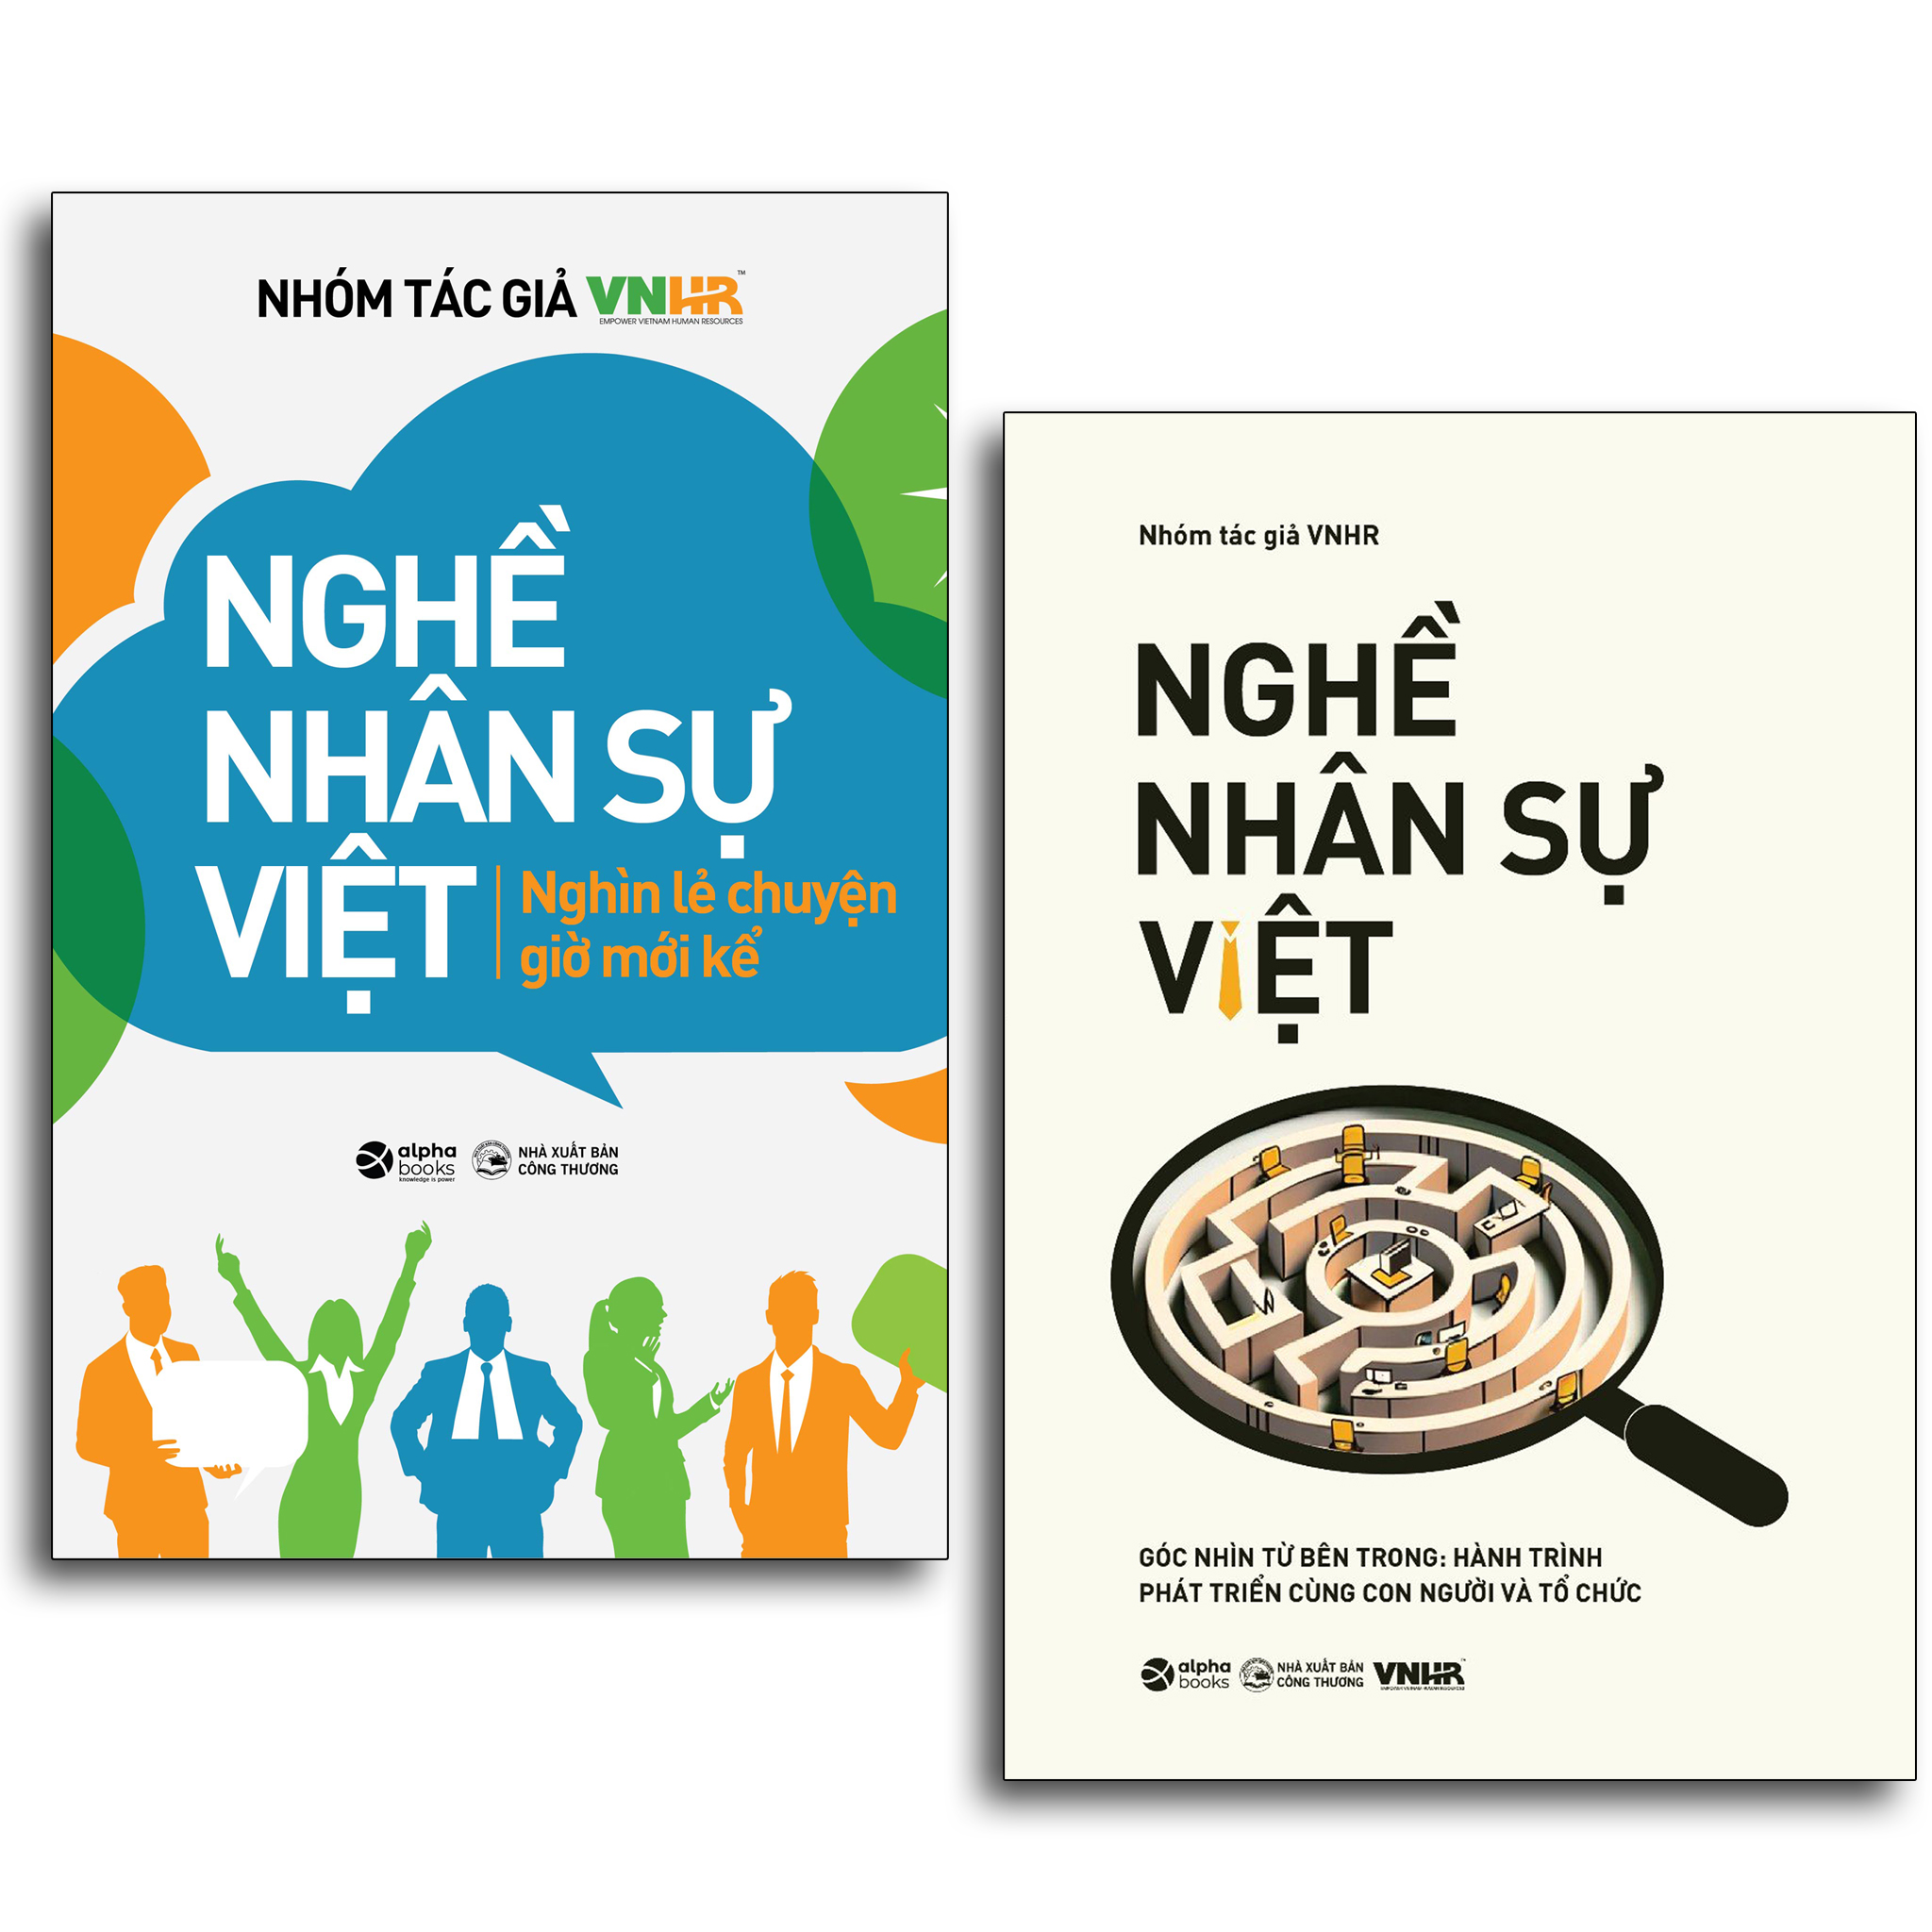 Trạm Đọc Official | Nghề Nhân Sự Việt : Nghìn Lẻ Chuyện Giờ Mới Kể + Góc Nhìn Từ Bên Trong: Hành trình phát triển cùng con người và tổ chức ( 2 cuốn )